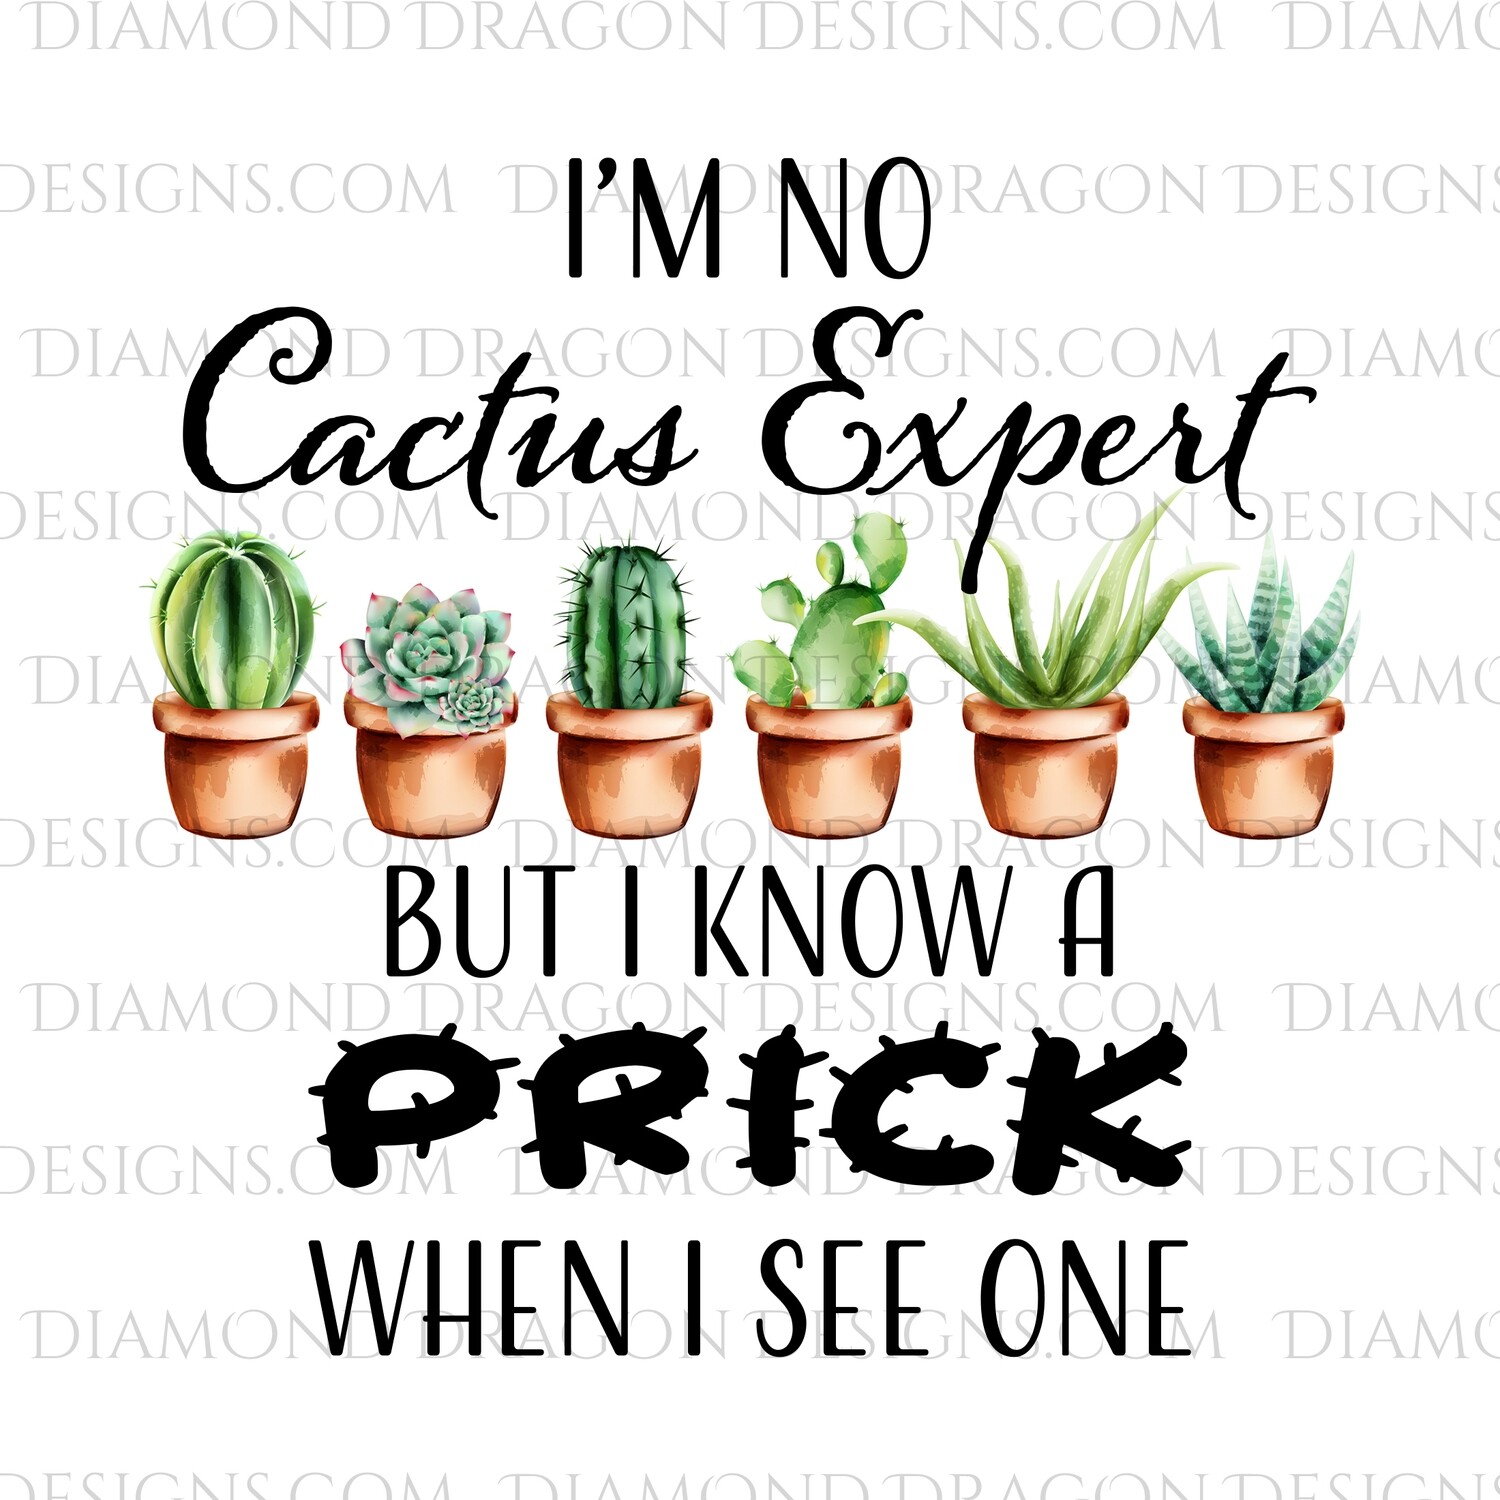 Cactus - I'm No Cactus Expert, But I Know a Prick, Digital Image